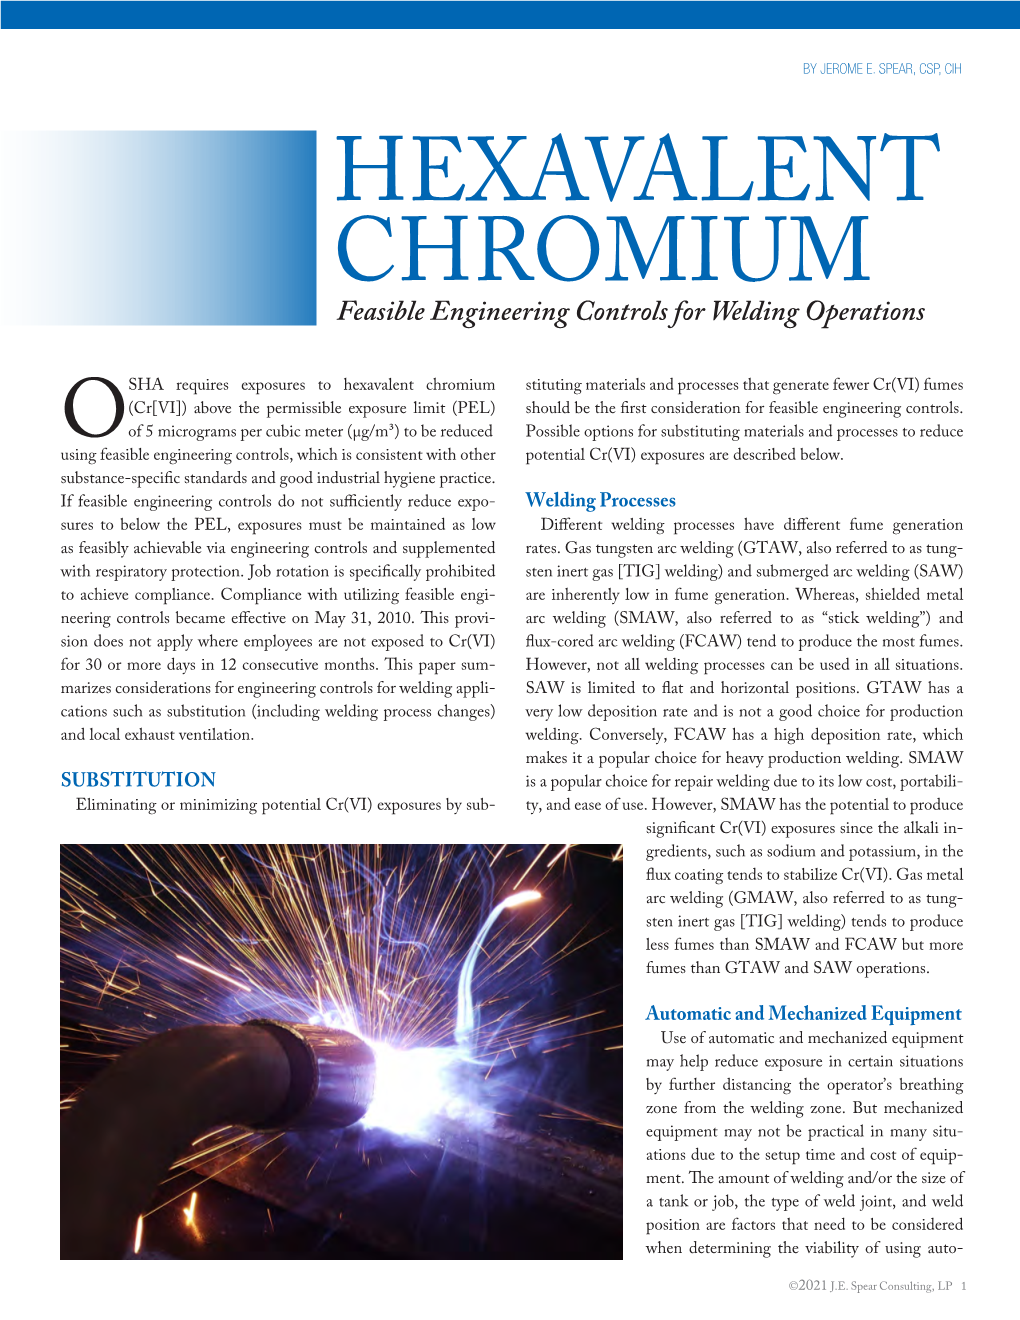 Hexavalent Chromium: Feasible Engineering Controls for Welding